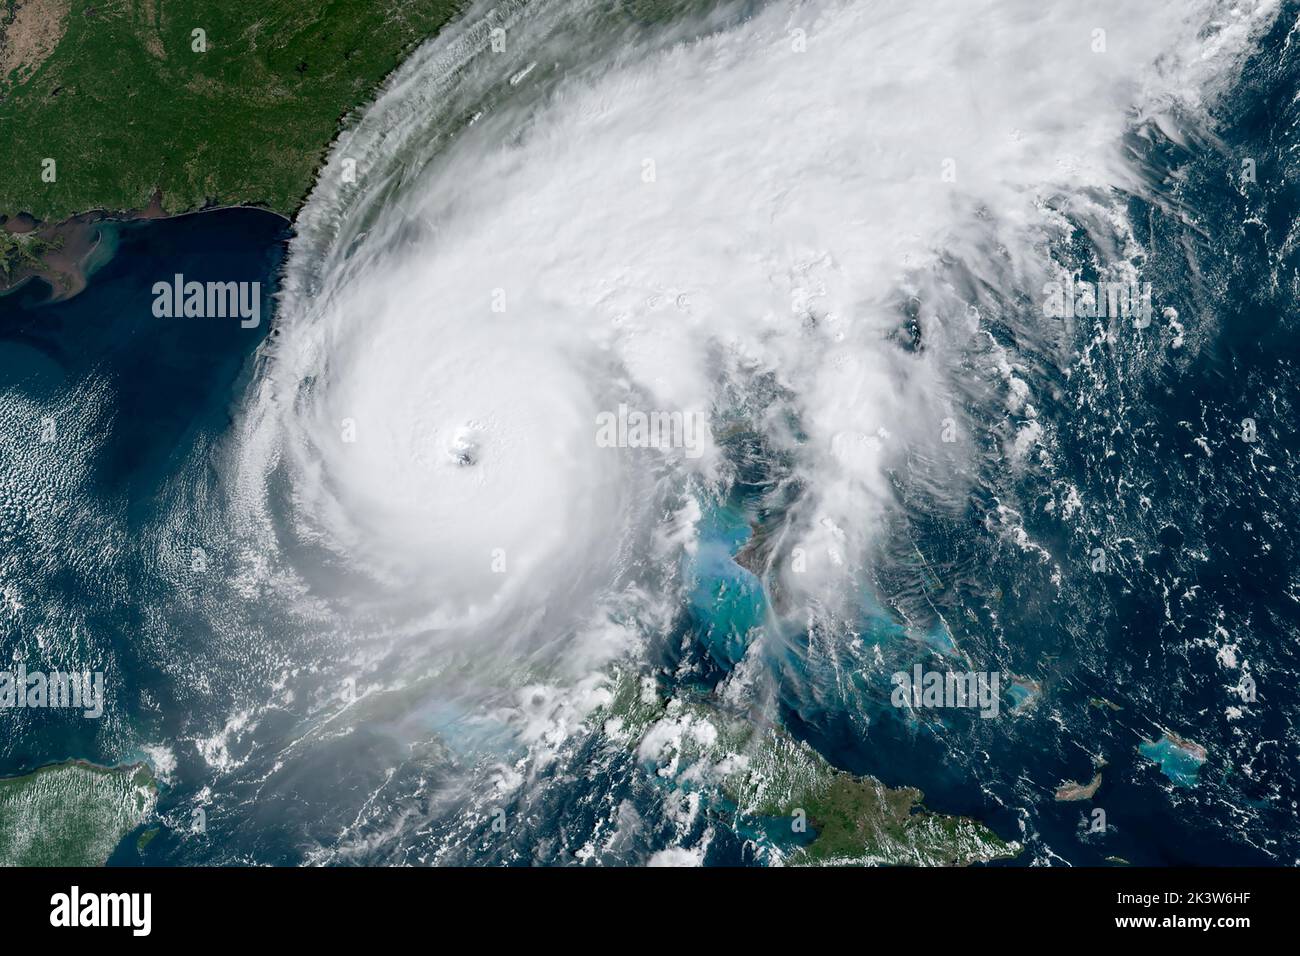 Ouragan Ian dans le golfe du Mexique mercredi matin, 28 septembre 2022, juste avant la chute sur la côte sud-ouest de la Floride au-dessus des îles Sanibel et Captiva avec des vents de 155 km/h, à seulement 2 km/h sous une désignation de catégorie 5. (ÉTATS-UNIS) Banque D'Images